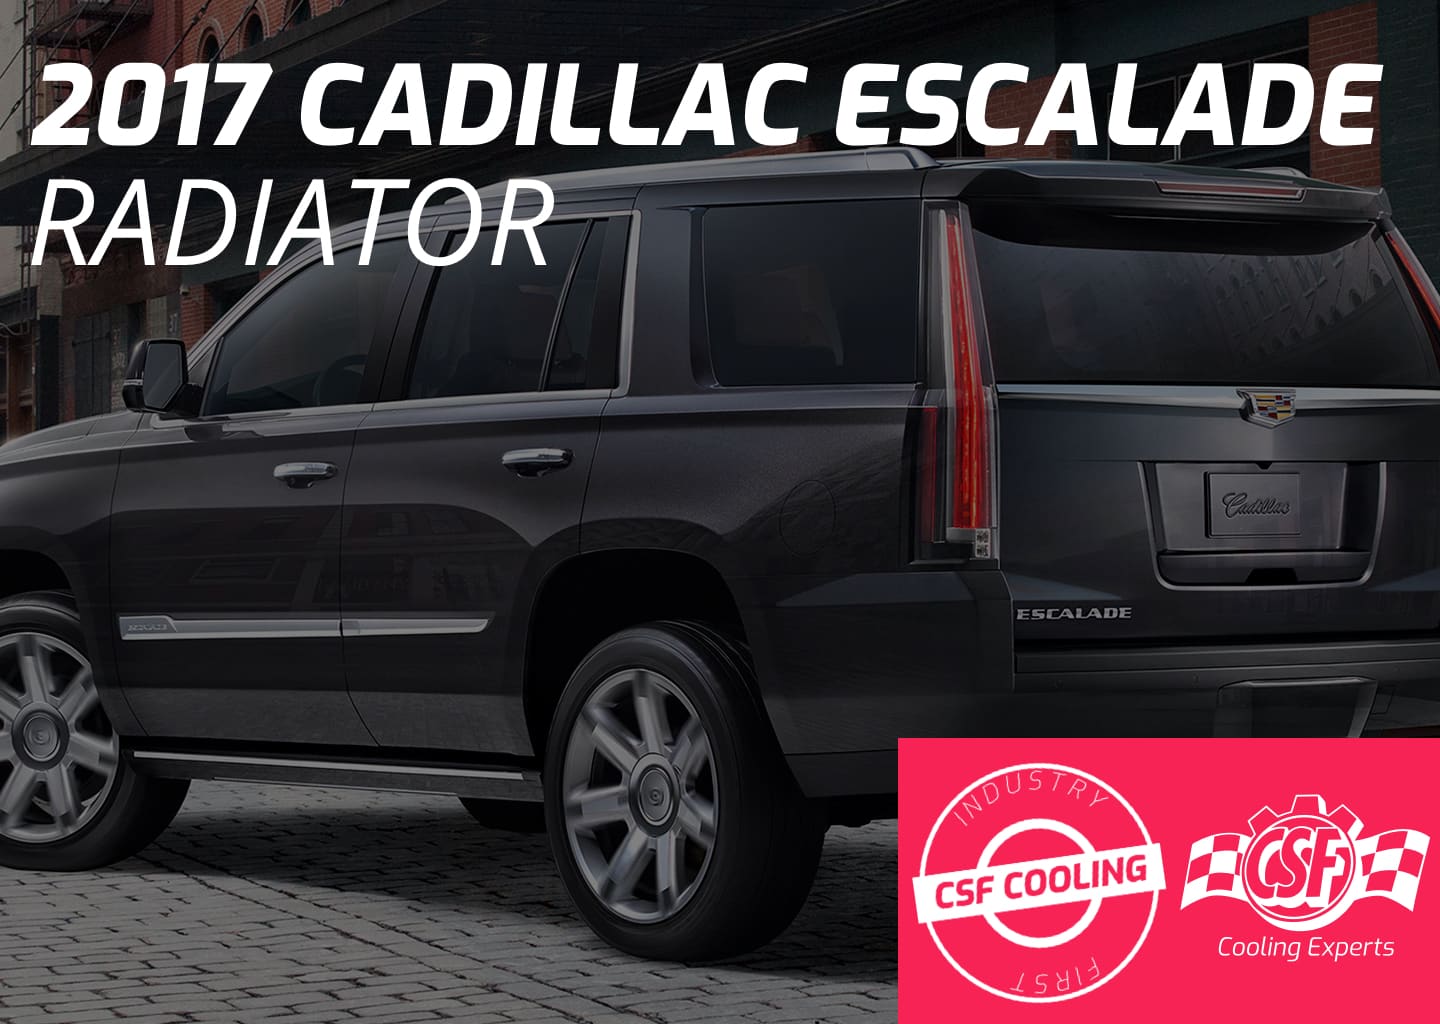 2017 Cadillac Escalade Radiator